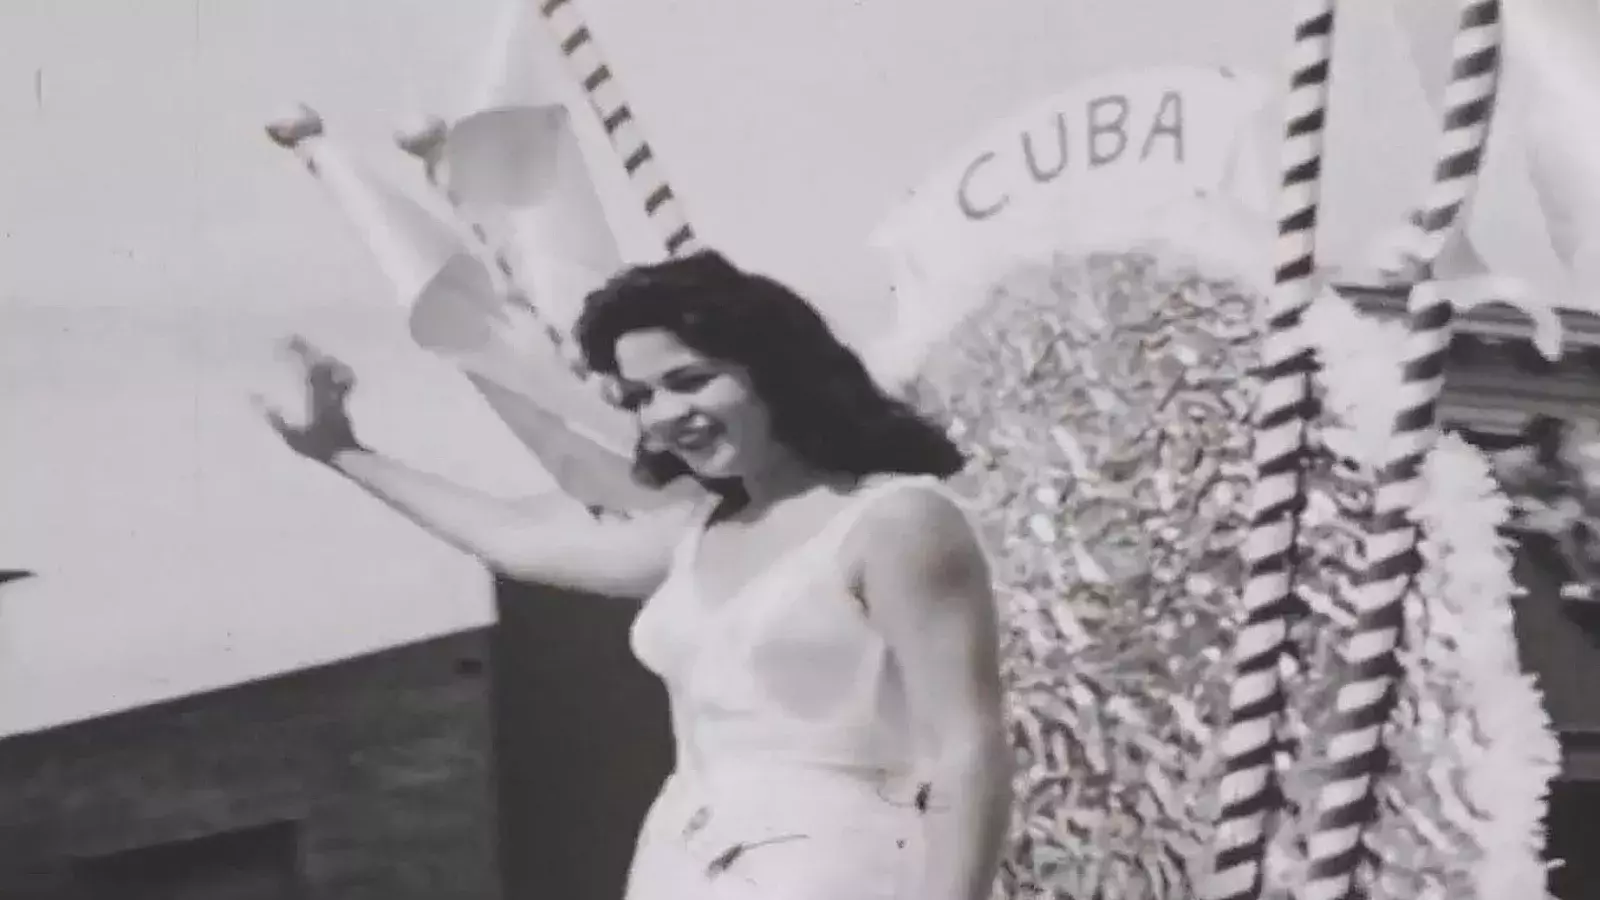 Cuba regresa al Miss Universe